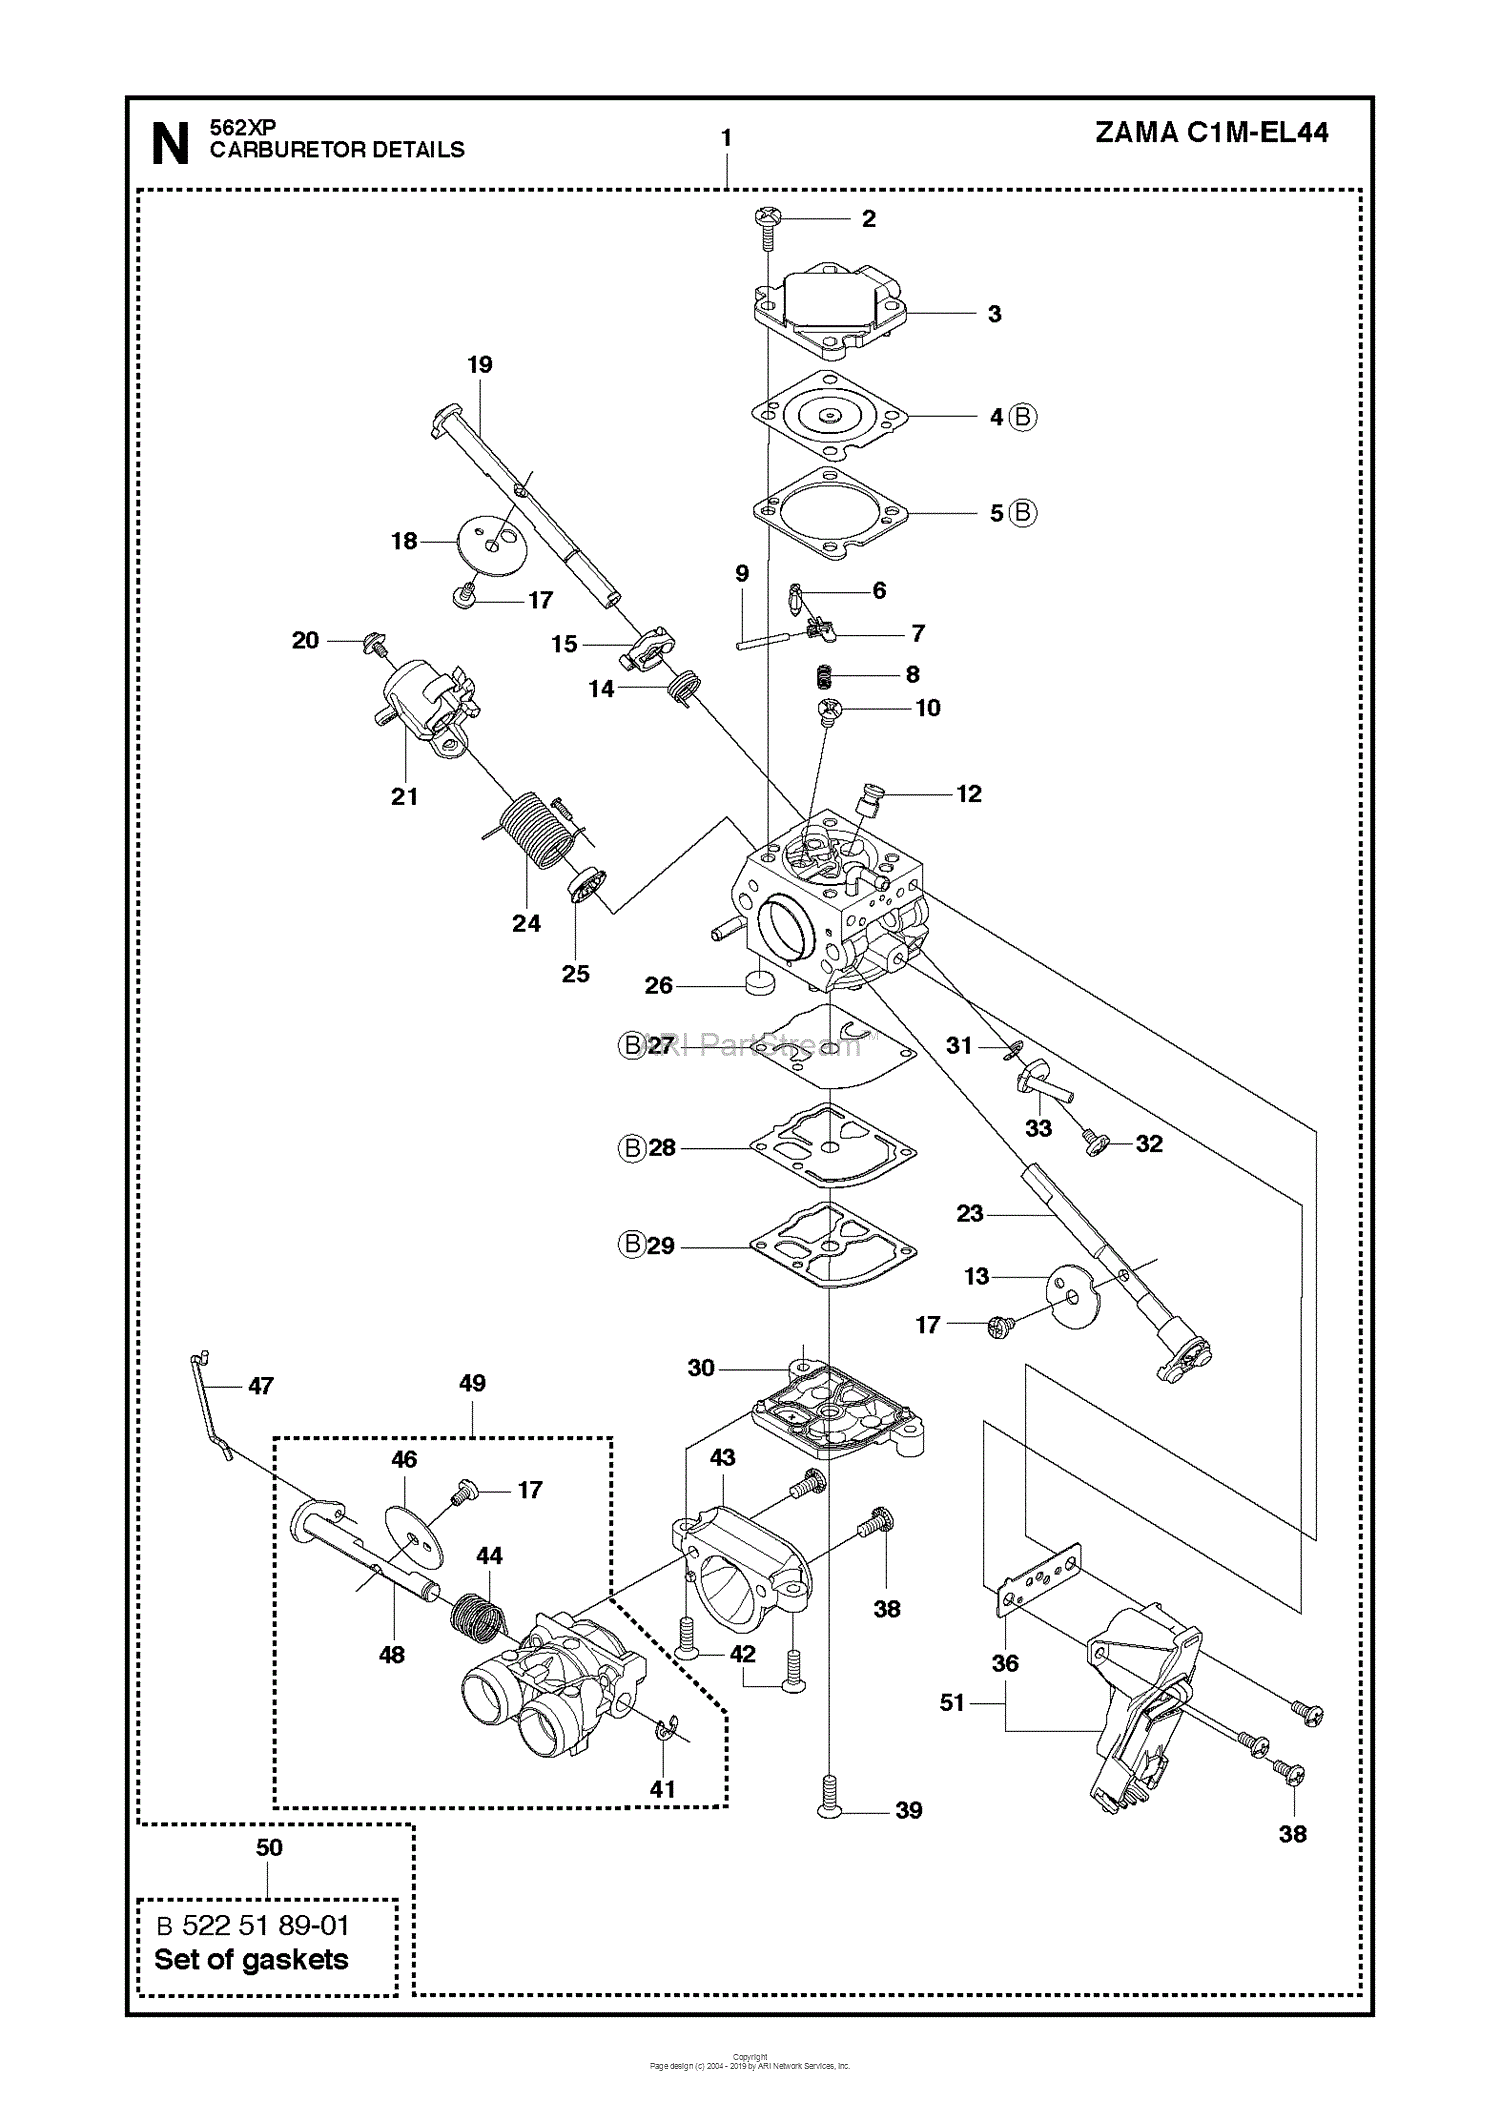 Husqvarna 562xp 11 06 Parts Diagram For Carburetor Details